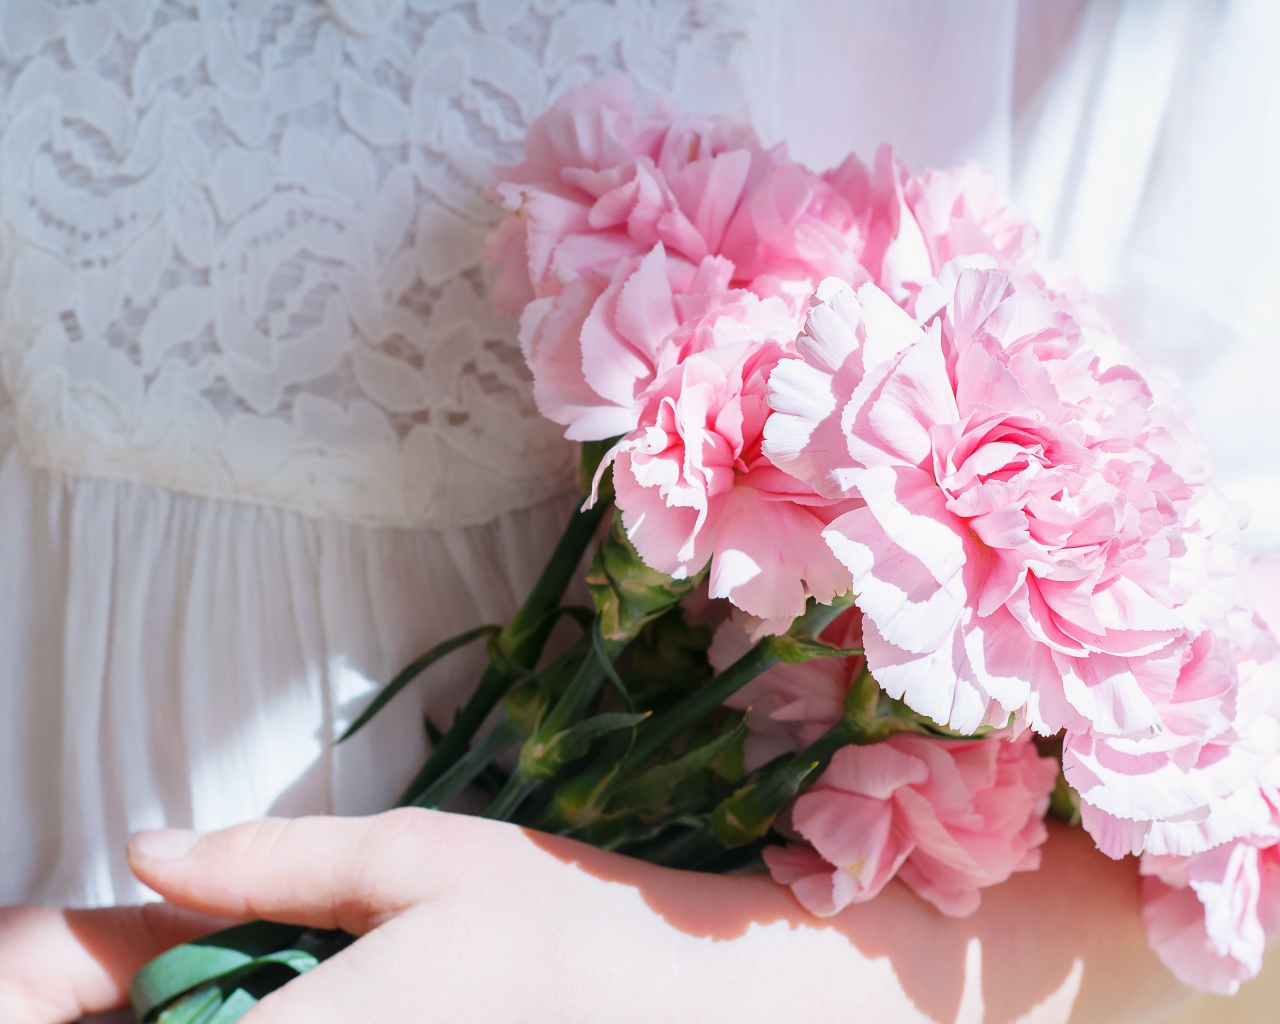 Букет розовых цветов гвоздики в руках у невесты